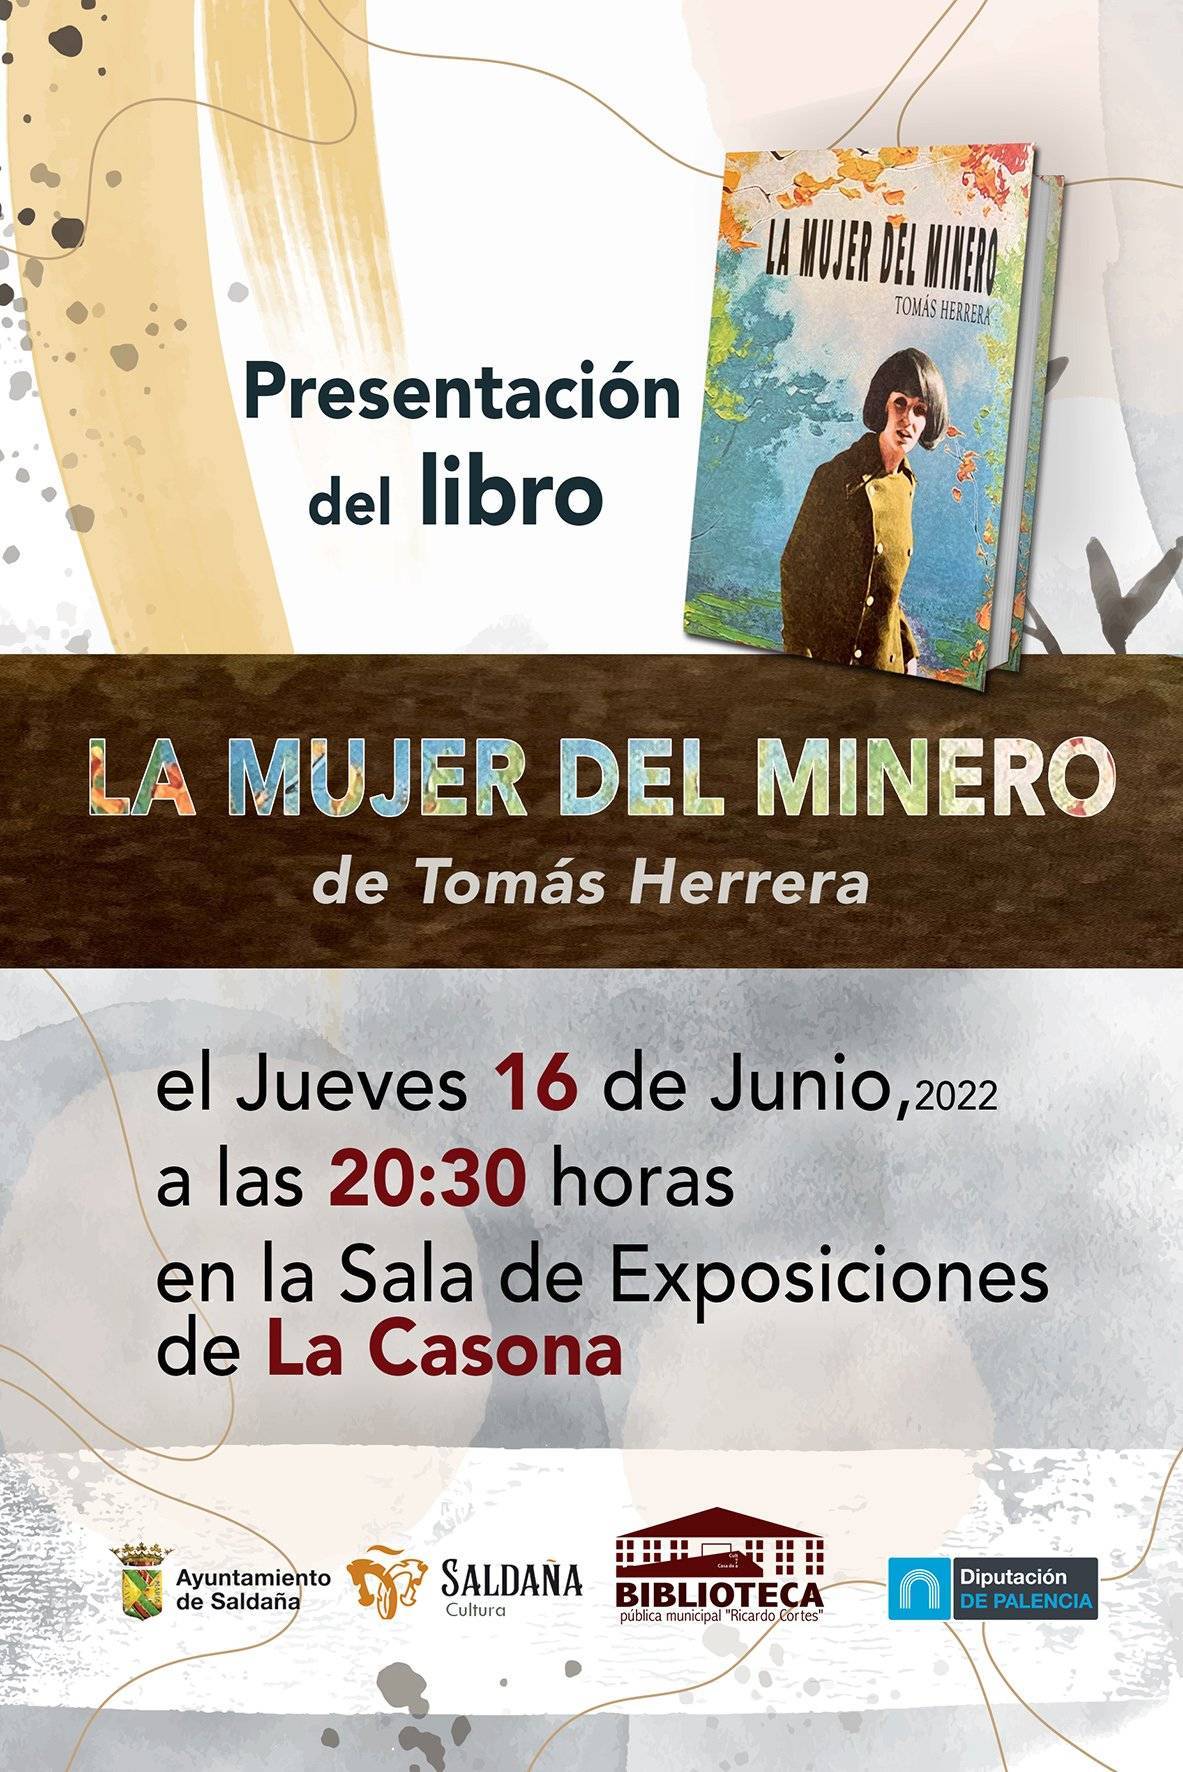 Presentación del libro 'La mujer del minero' (2022) - Saldaña (Palencia)